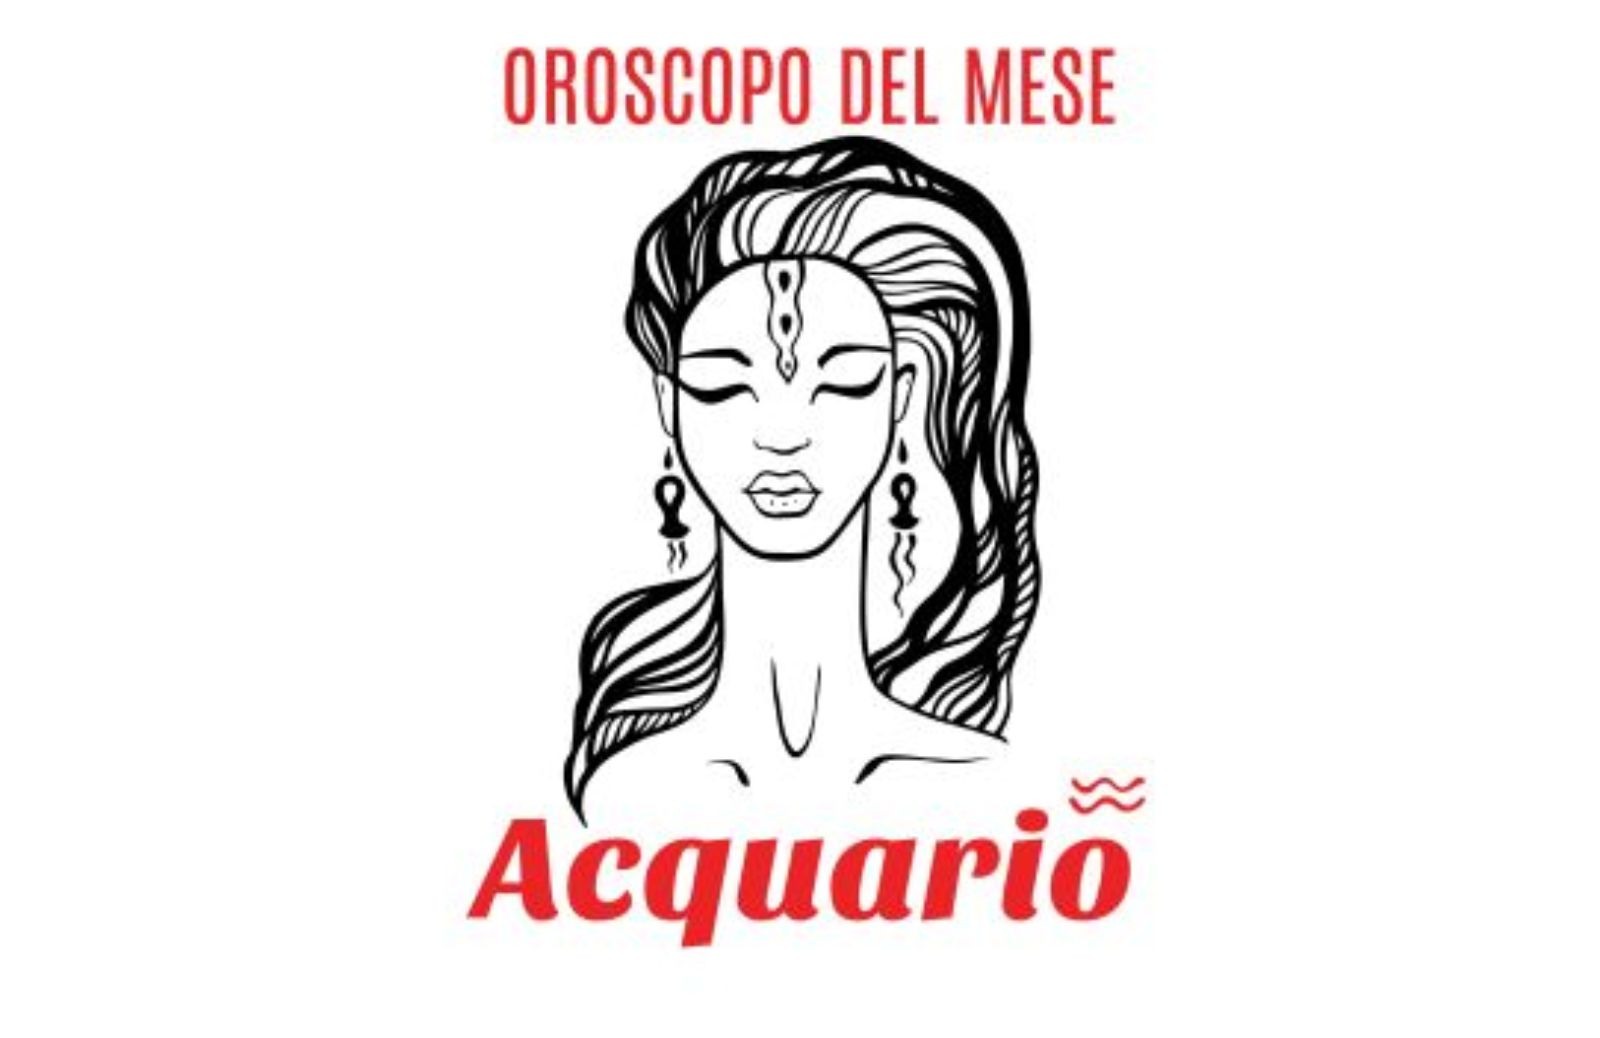 Oroscopo del mese: Acquario - novembre 2019